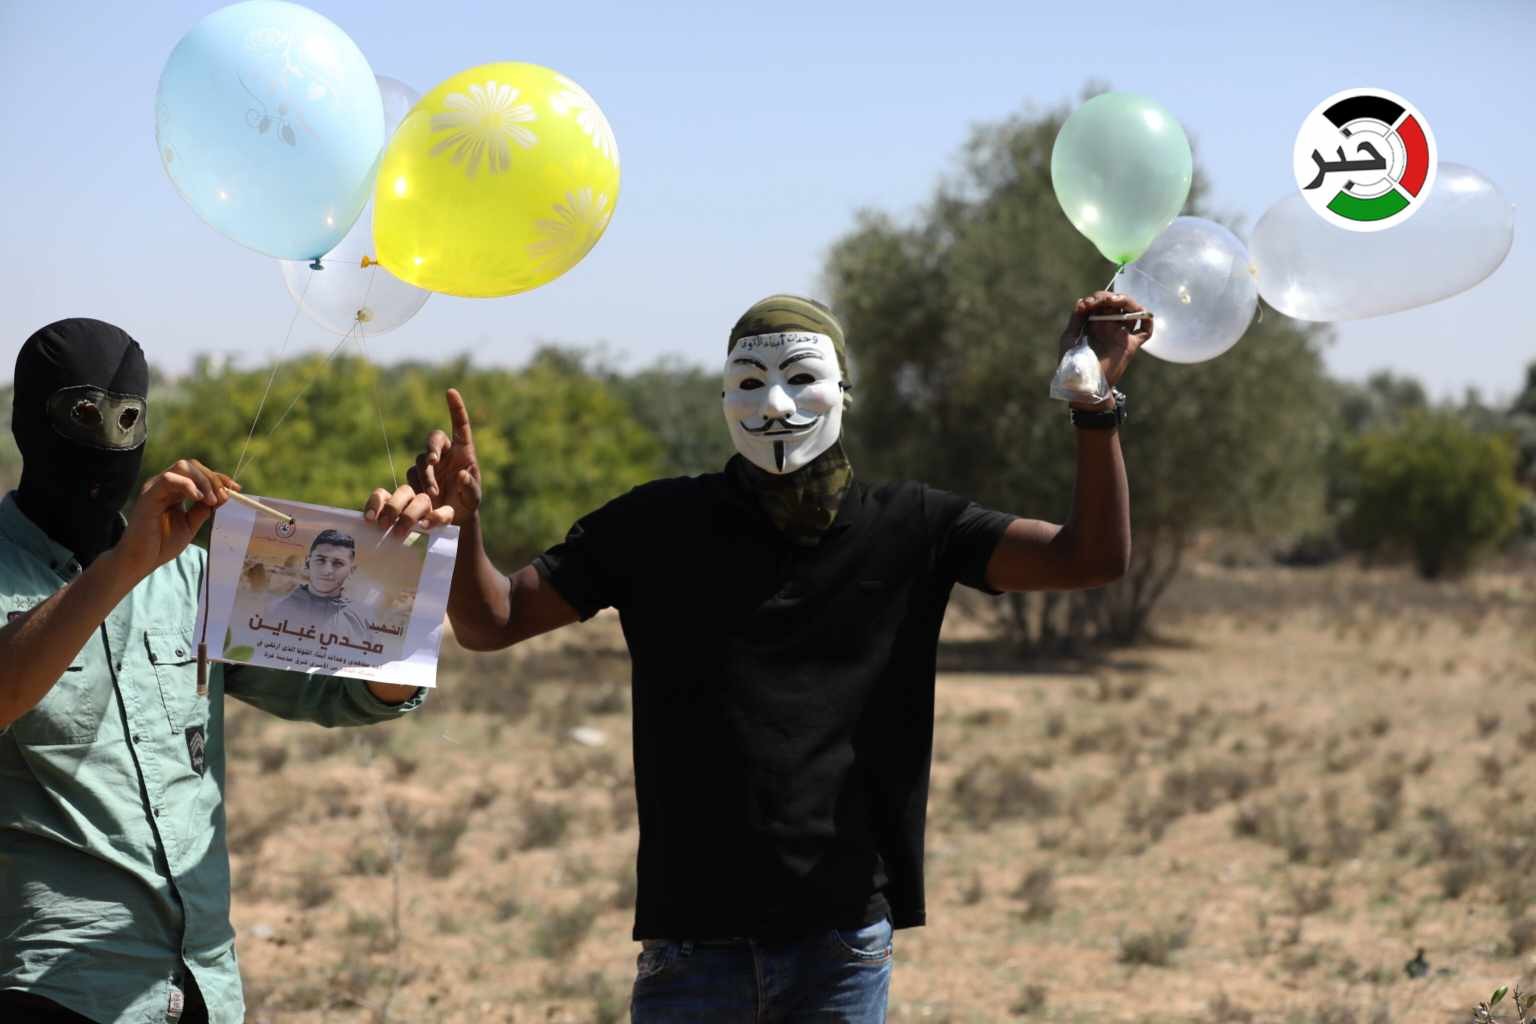 إطلاق دفعات من البالونات الحارقة تجاه مستوطنات "غلاف غزة"